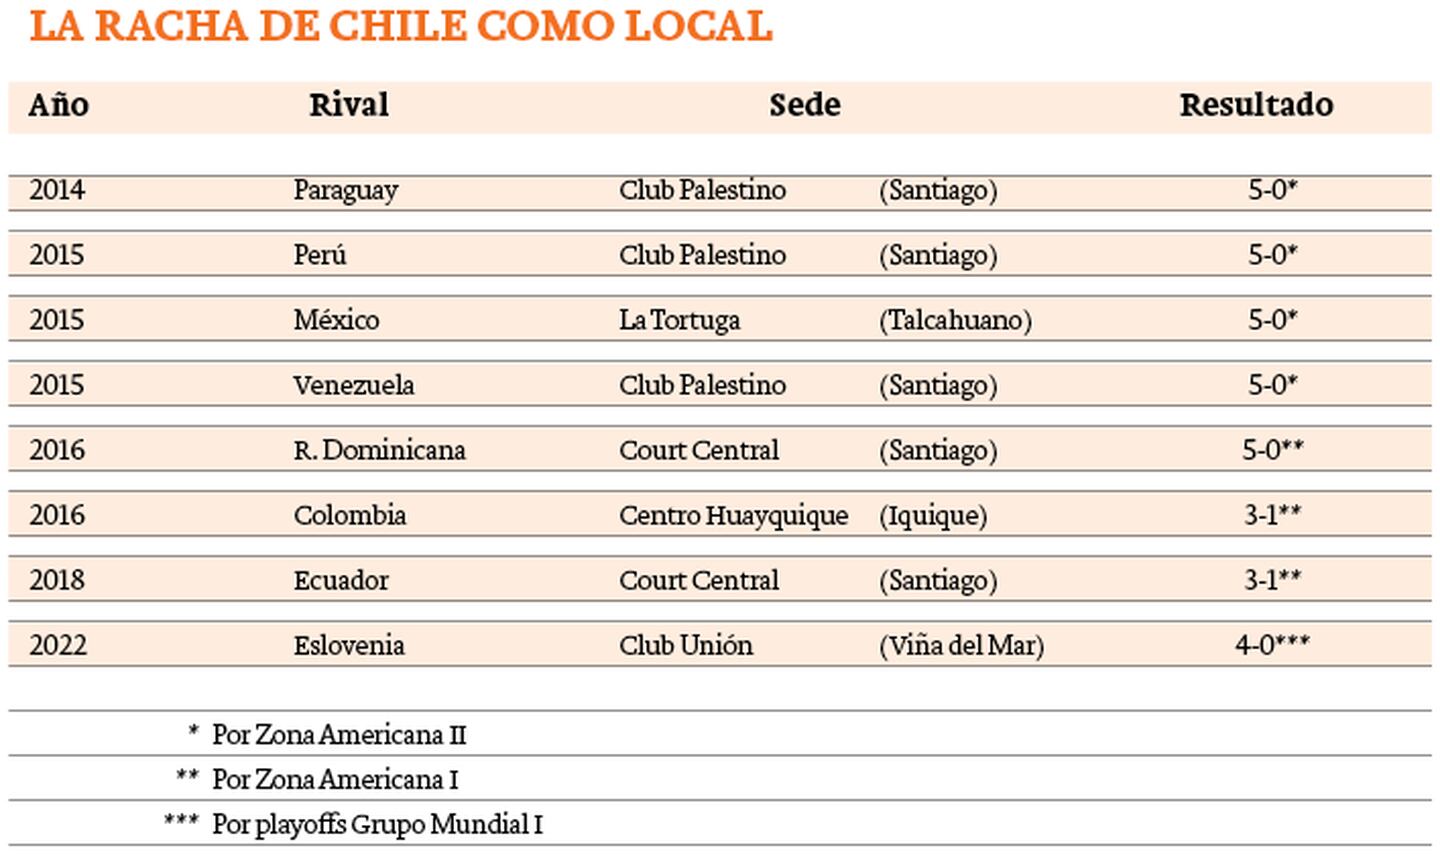 Chile como local